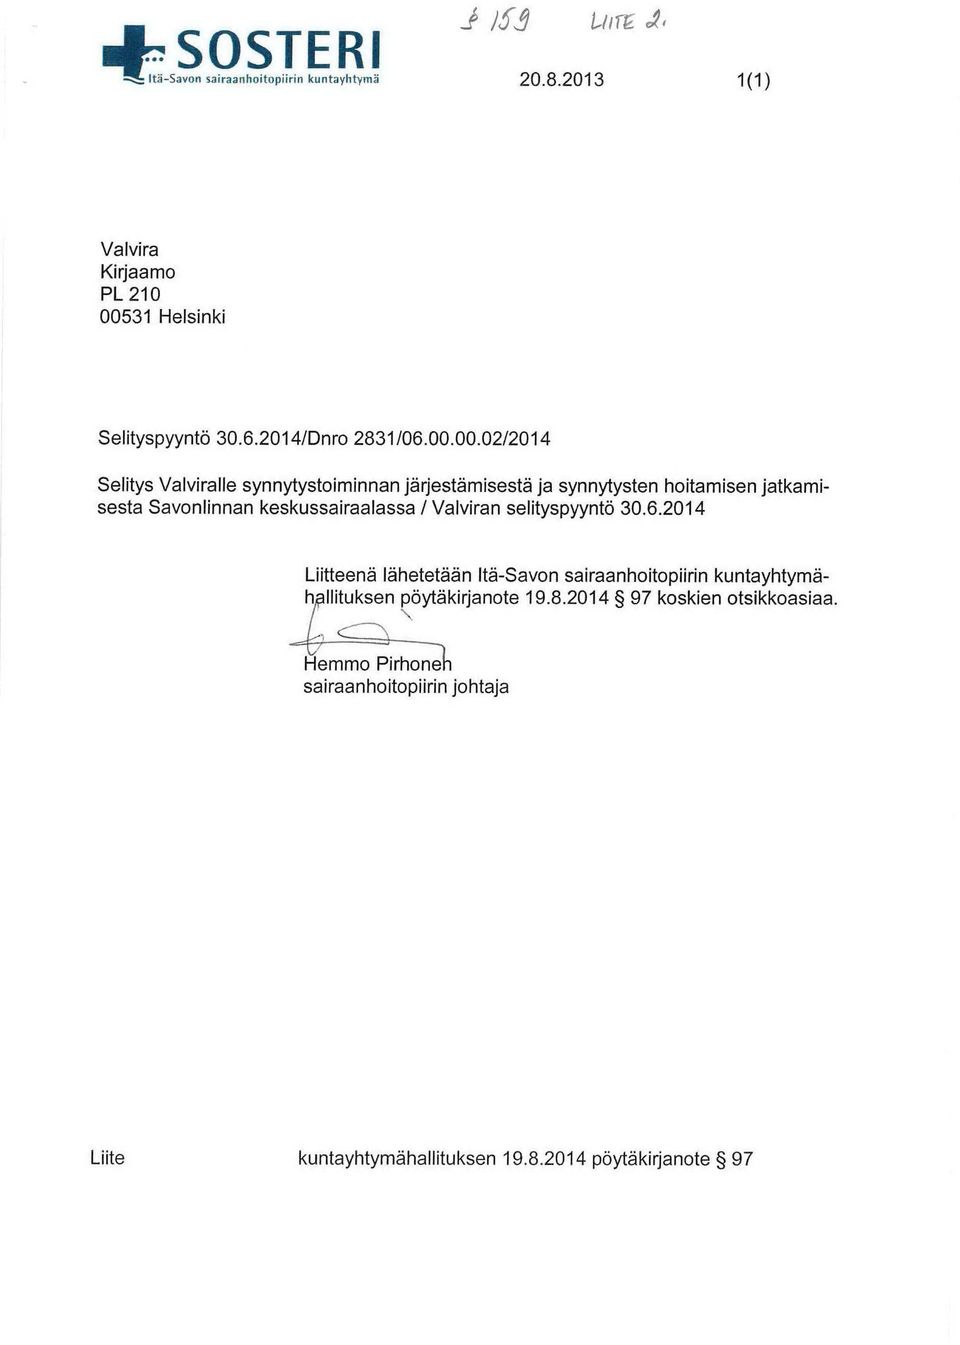 00.02/2014 Selitys Valviralle synnytystoiminnan järjestämisestä ja synnytysten hoitamisen jatkamisesta Savonlinnan